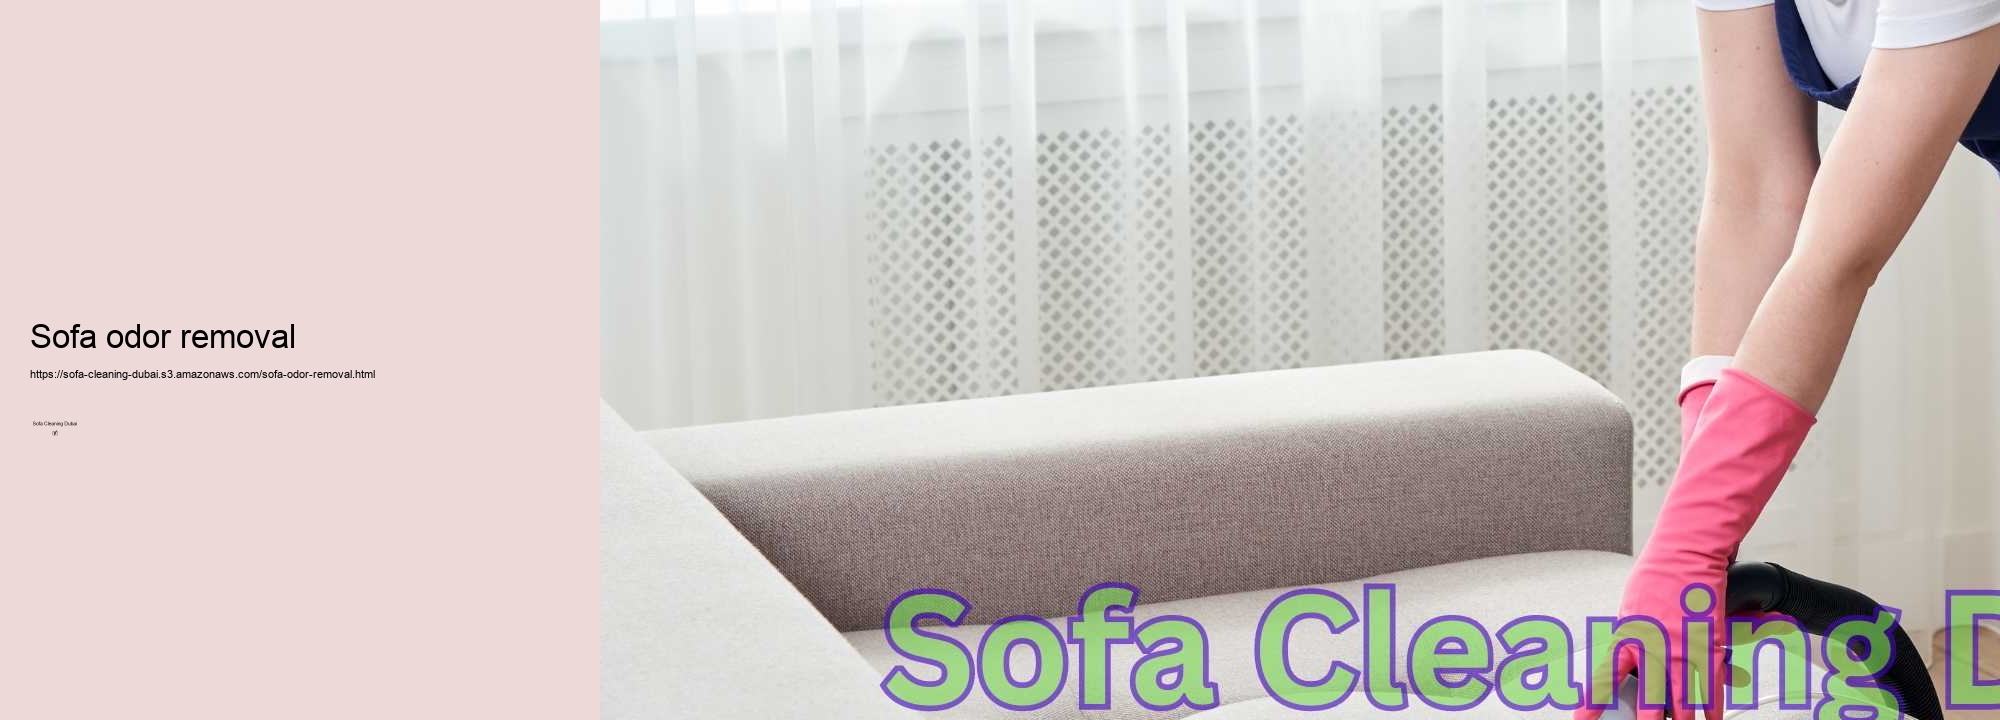 Sofa odor removal